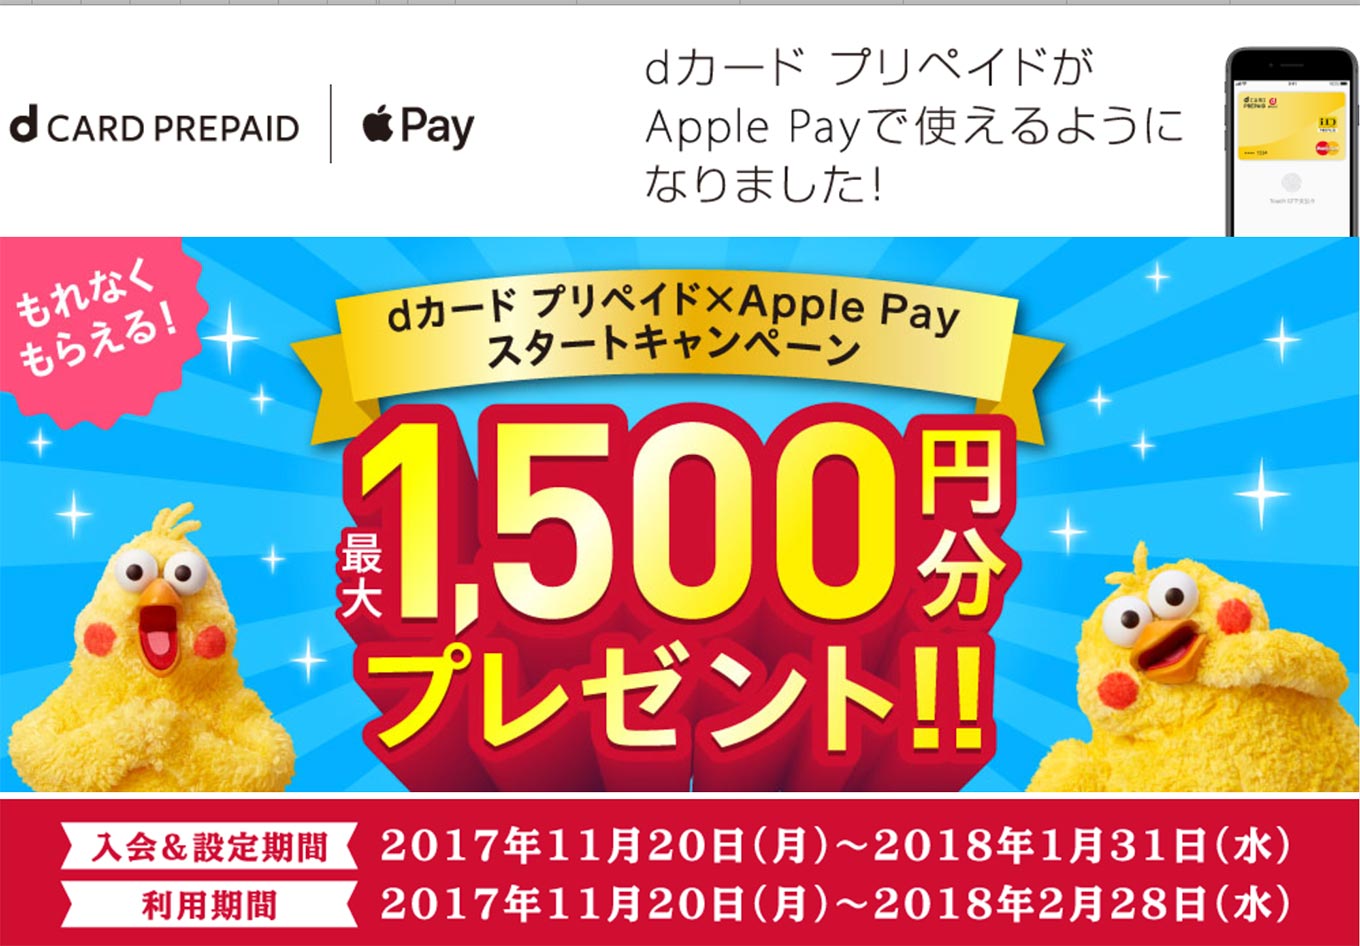 NTTドコモ、「dカード プリペイド」がApple Payに対応